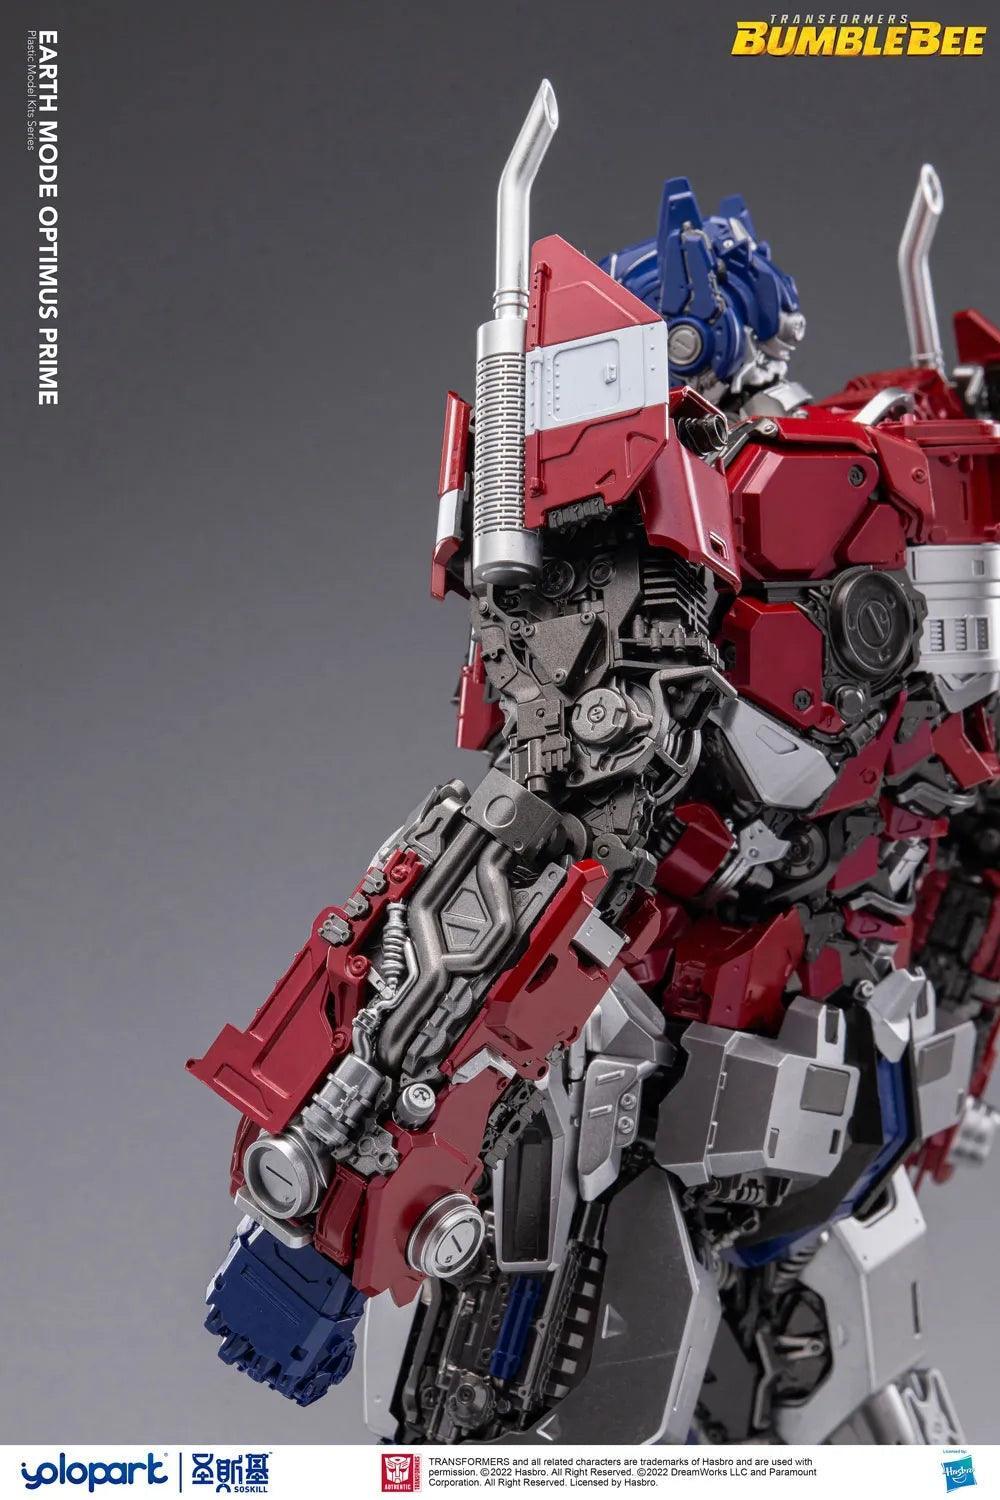 Yolopark - Transformers Earth Mode Optimus Prime Model Kit